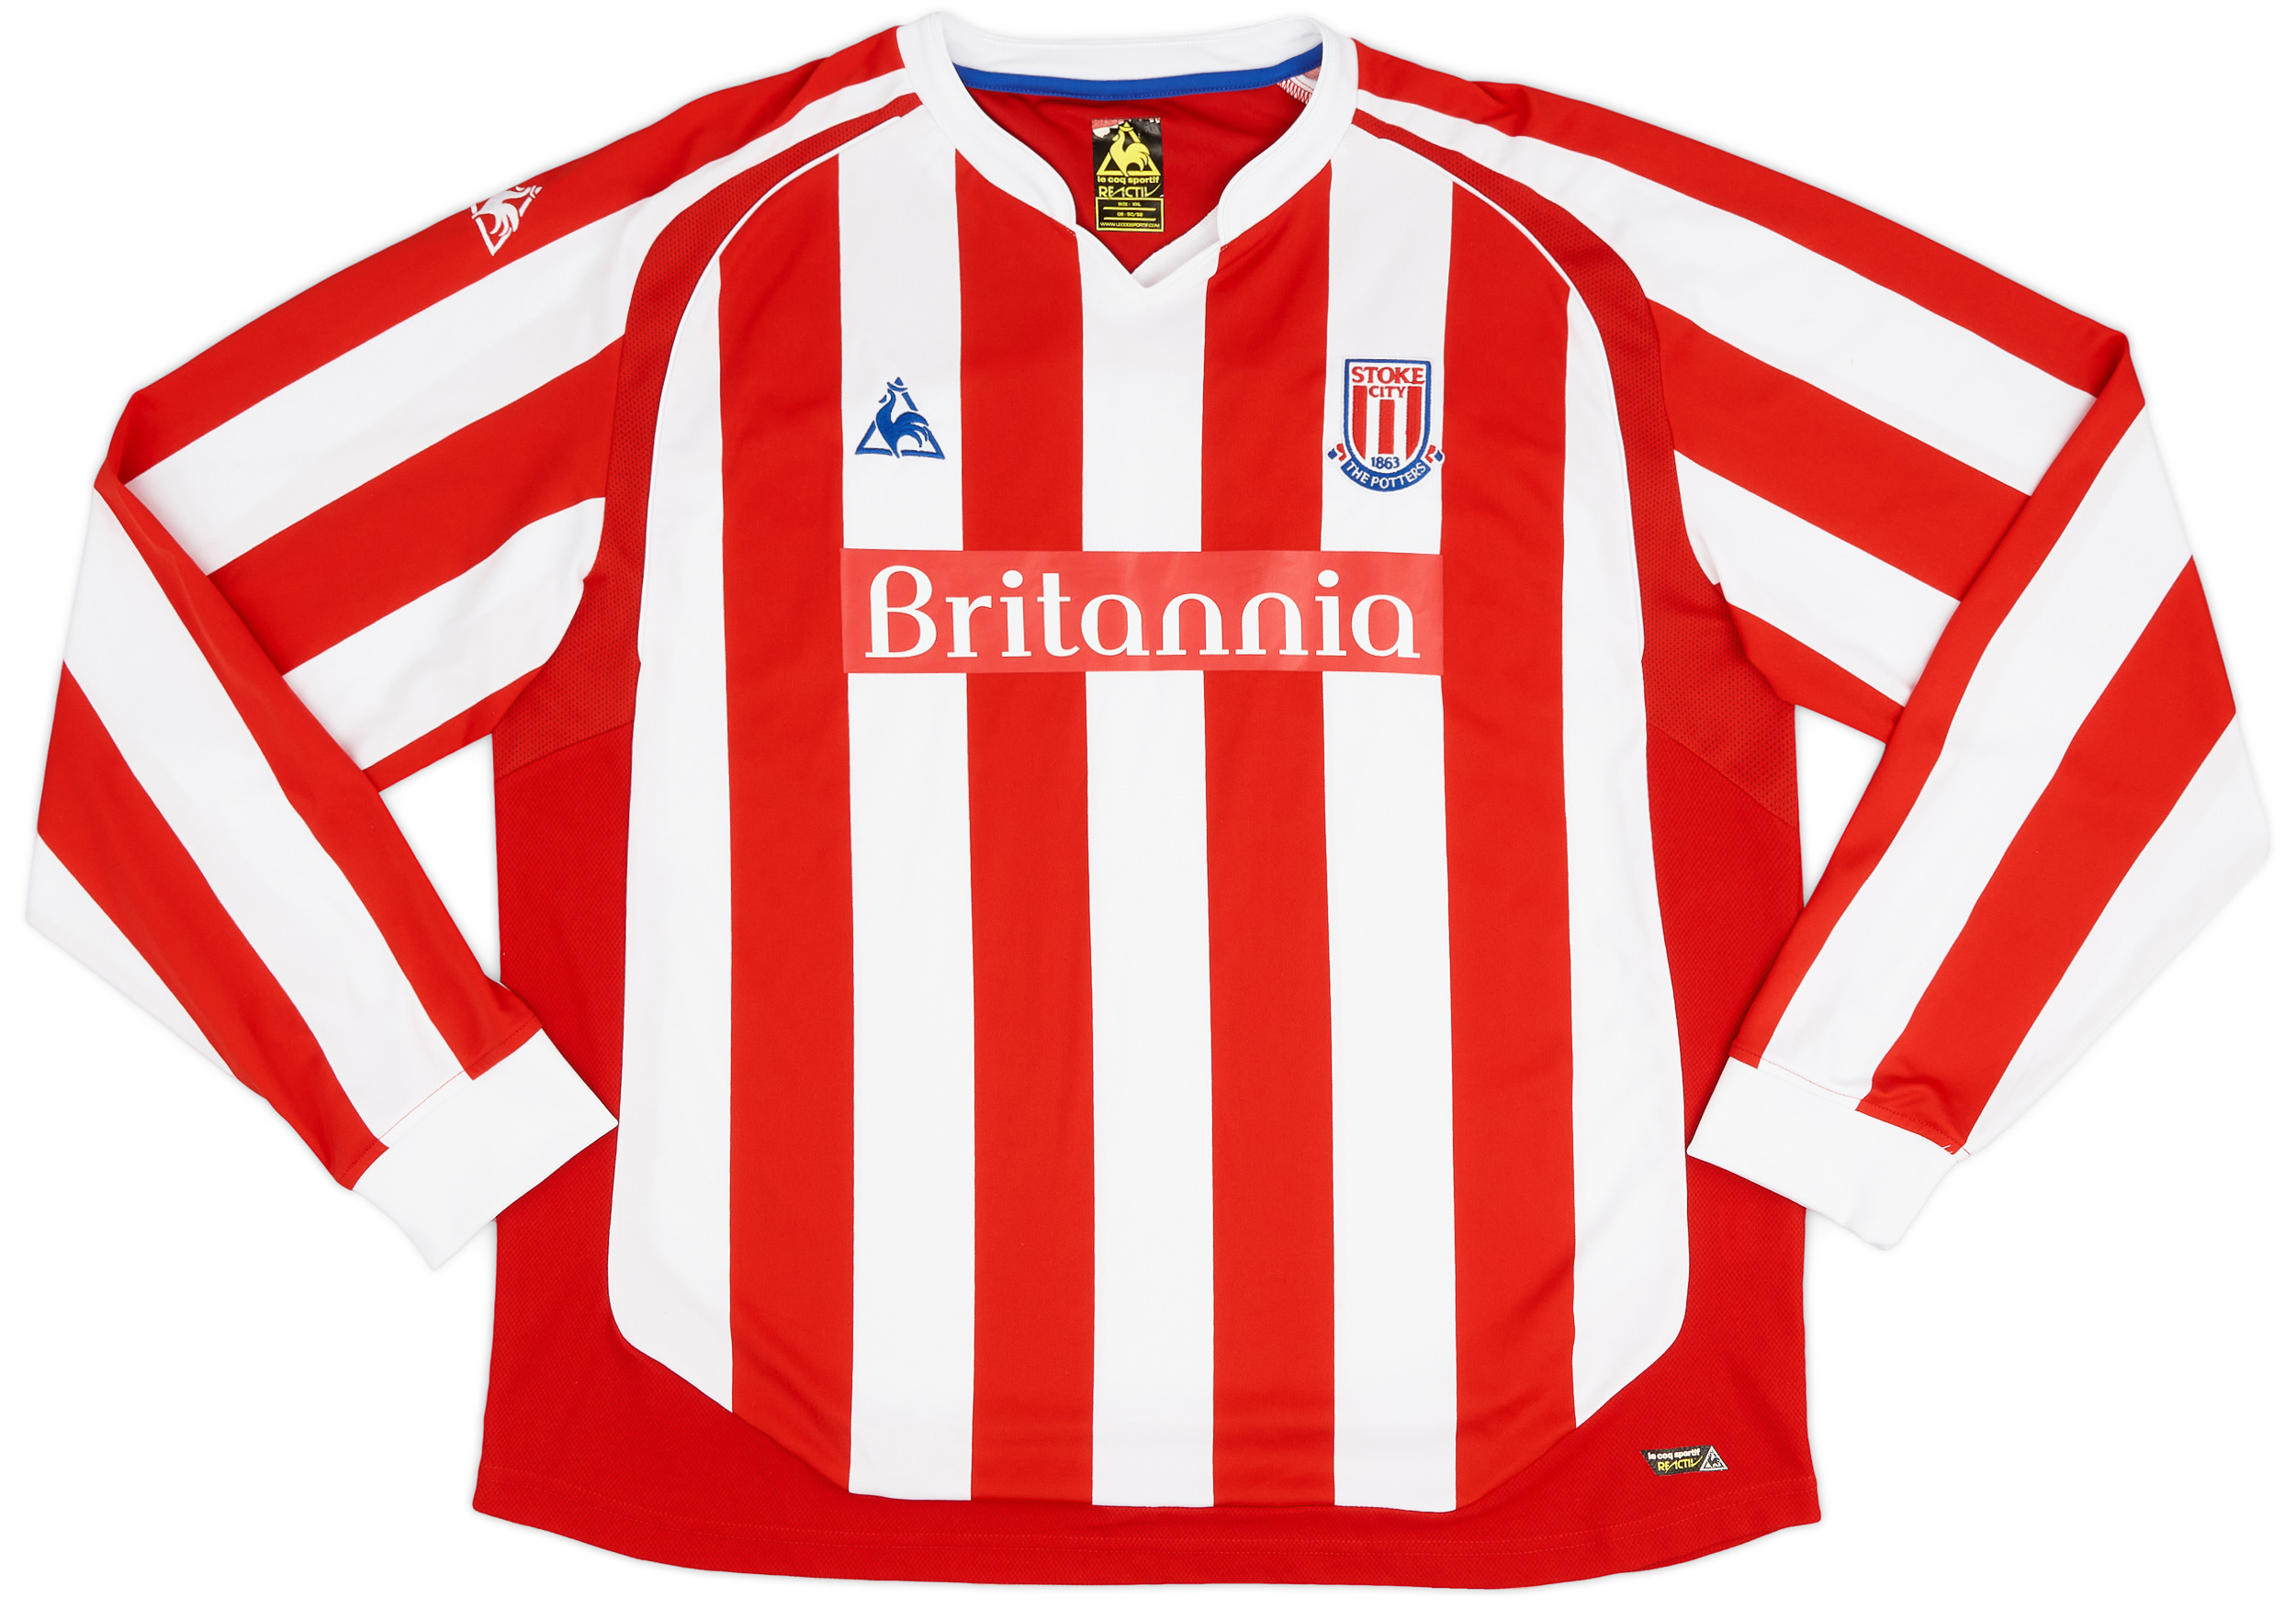 Stoke City  home Camiseta (Original)